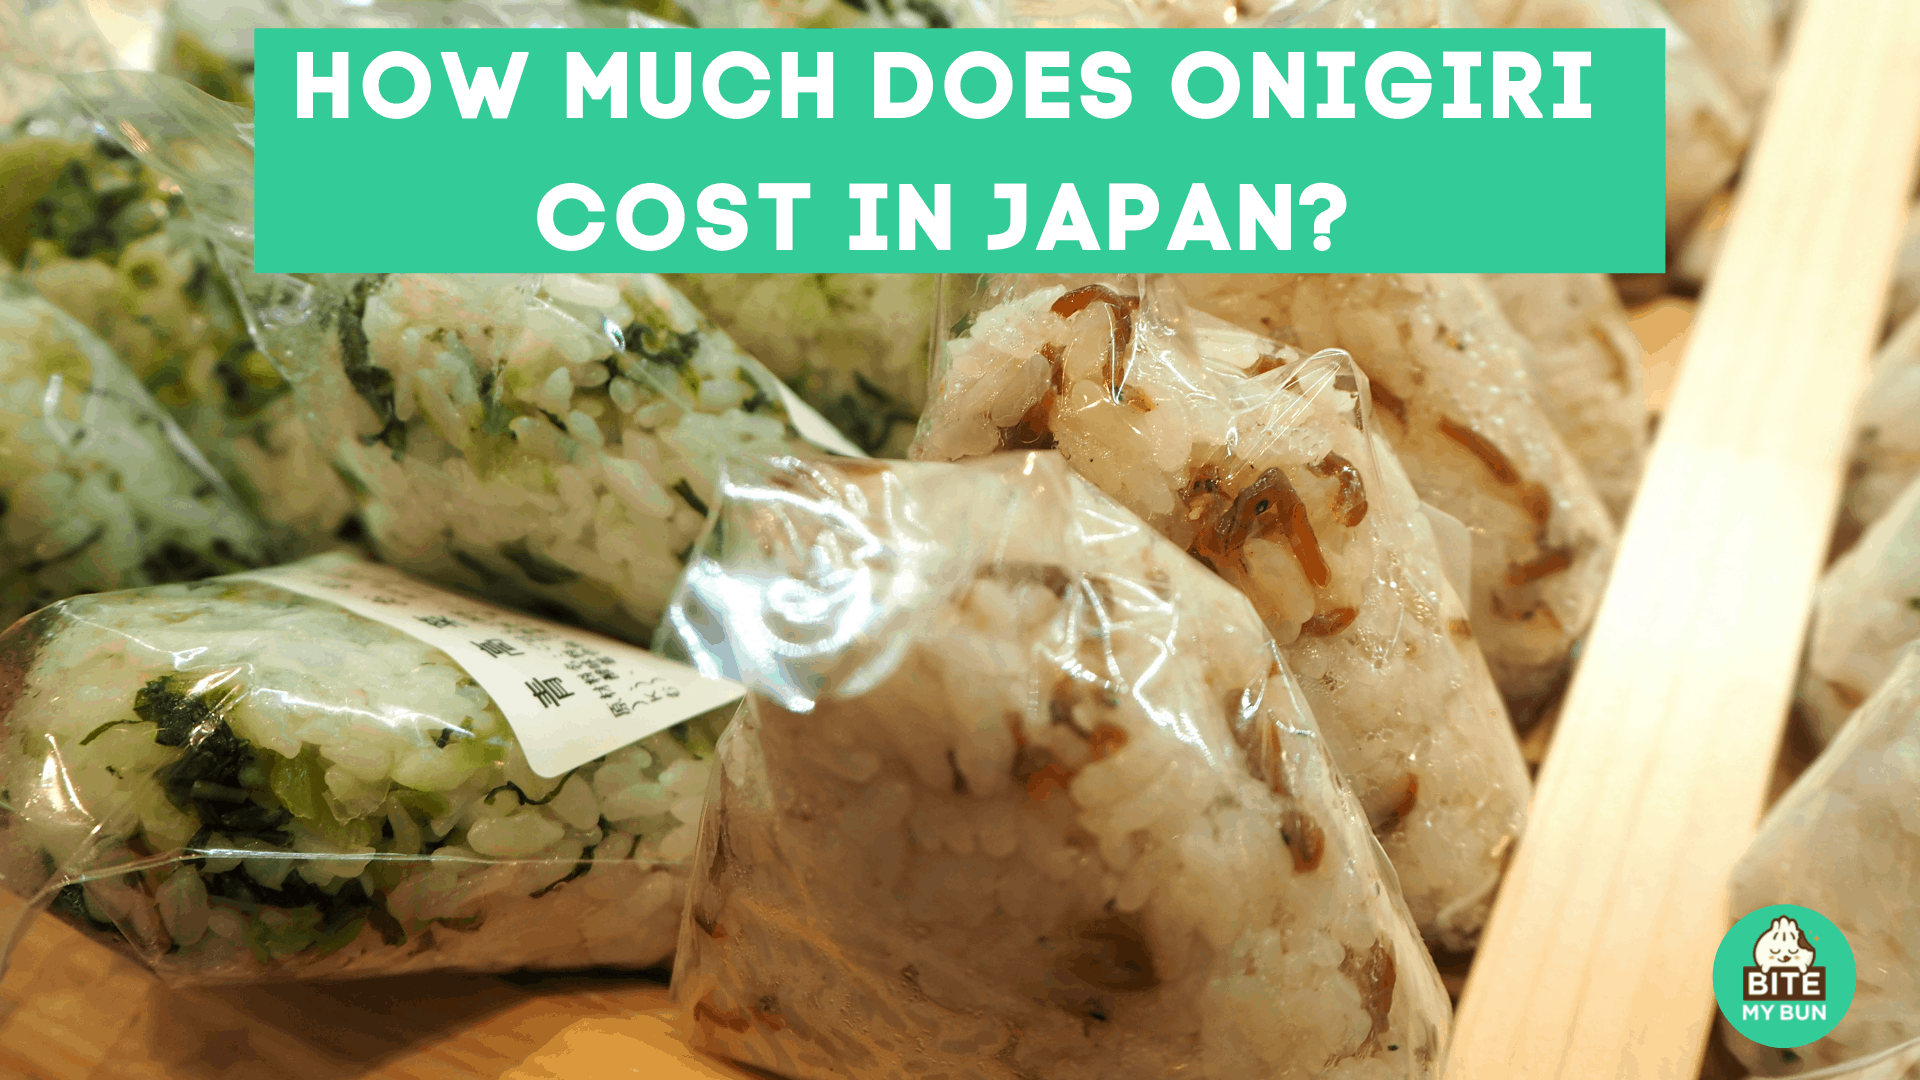 โอนิกิริในญี่ปุ่นราคาเท่าไหร่? มันจะไม่ทำลายธนาคาร